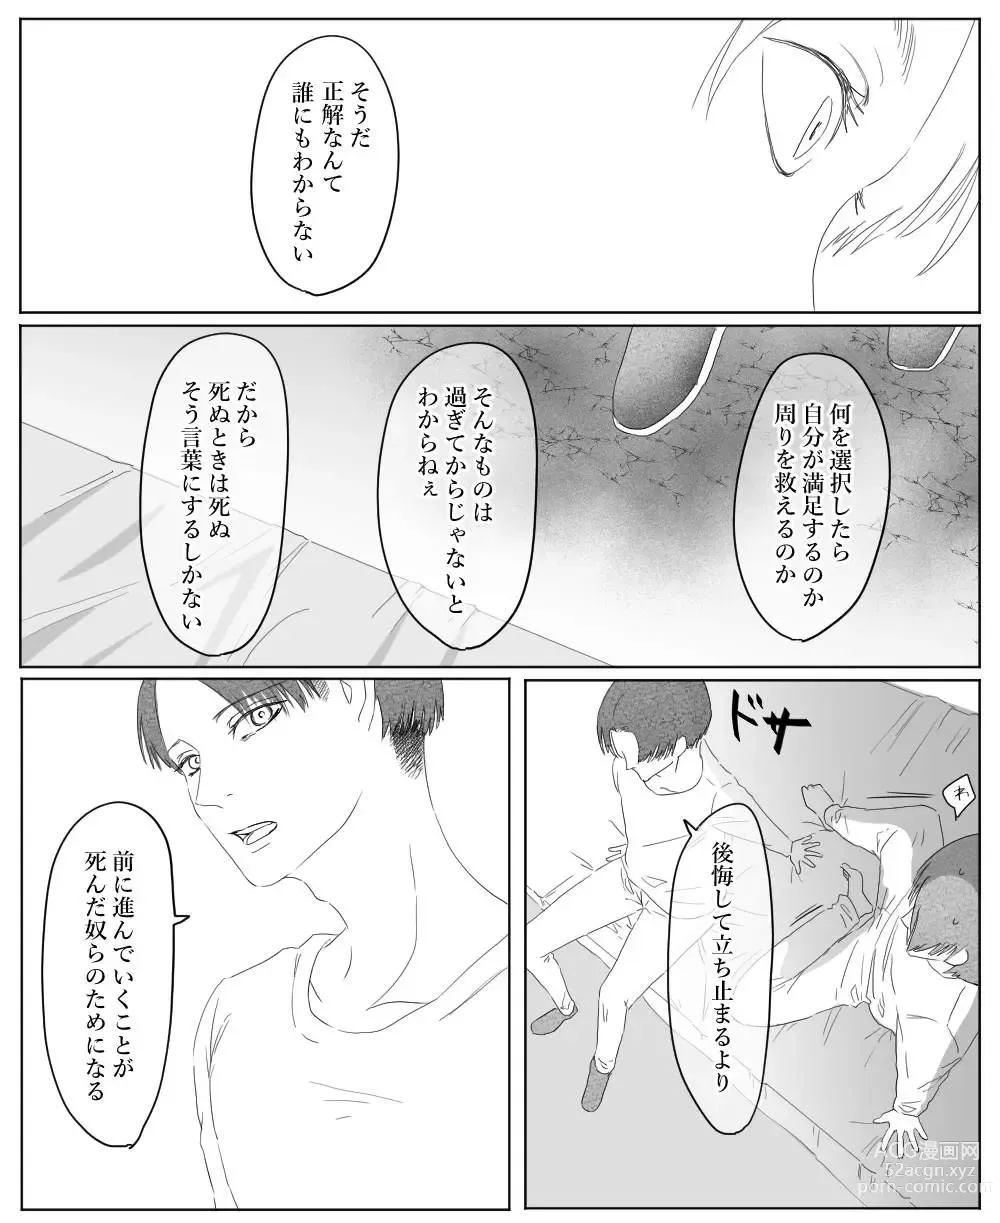 Page 115 of doujinshi Ore wa Anata no Saigo no Otoko